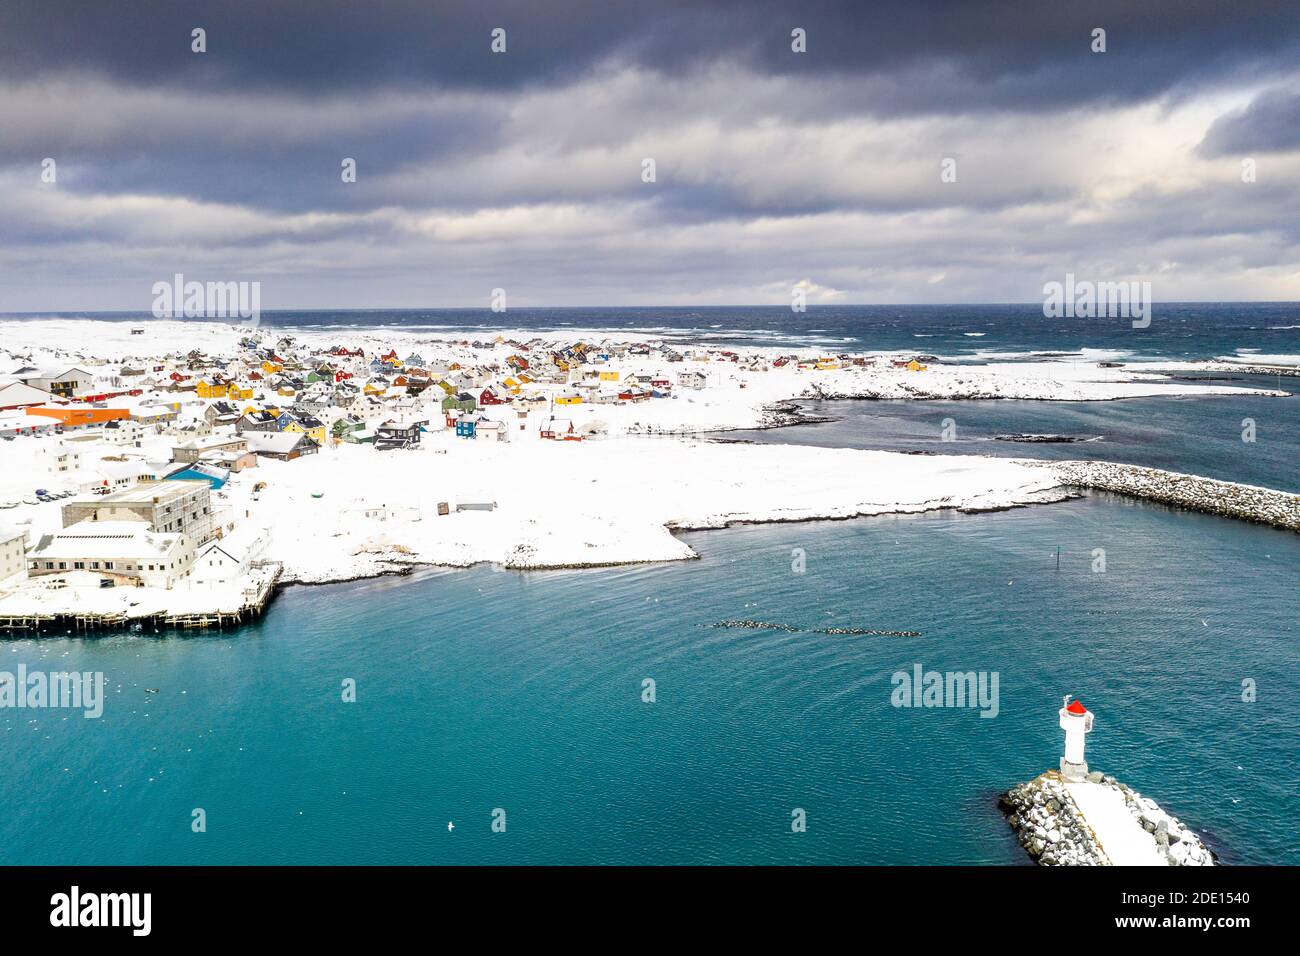 Nuages orageux au-dessus du phare et village de Berlevag recouvert de neige, mer de Barents, péninsule de Varanger, Troms og Finnmark, Norvège, Scandinavie, Europe Banque D'Images